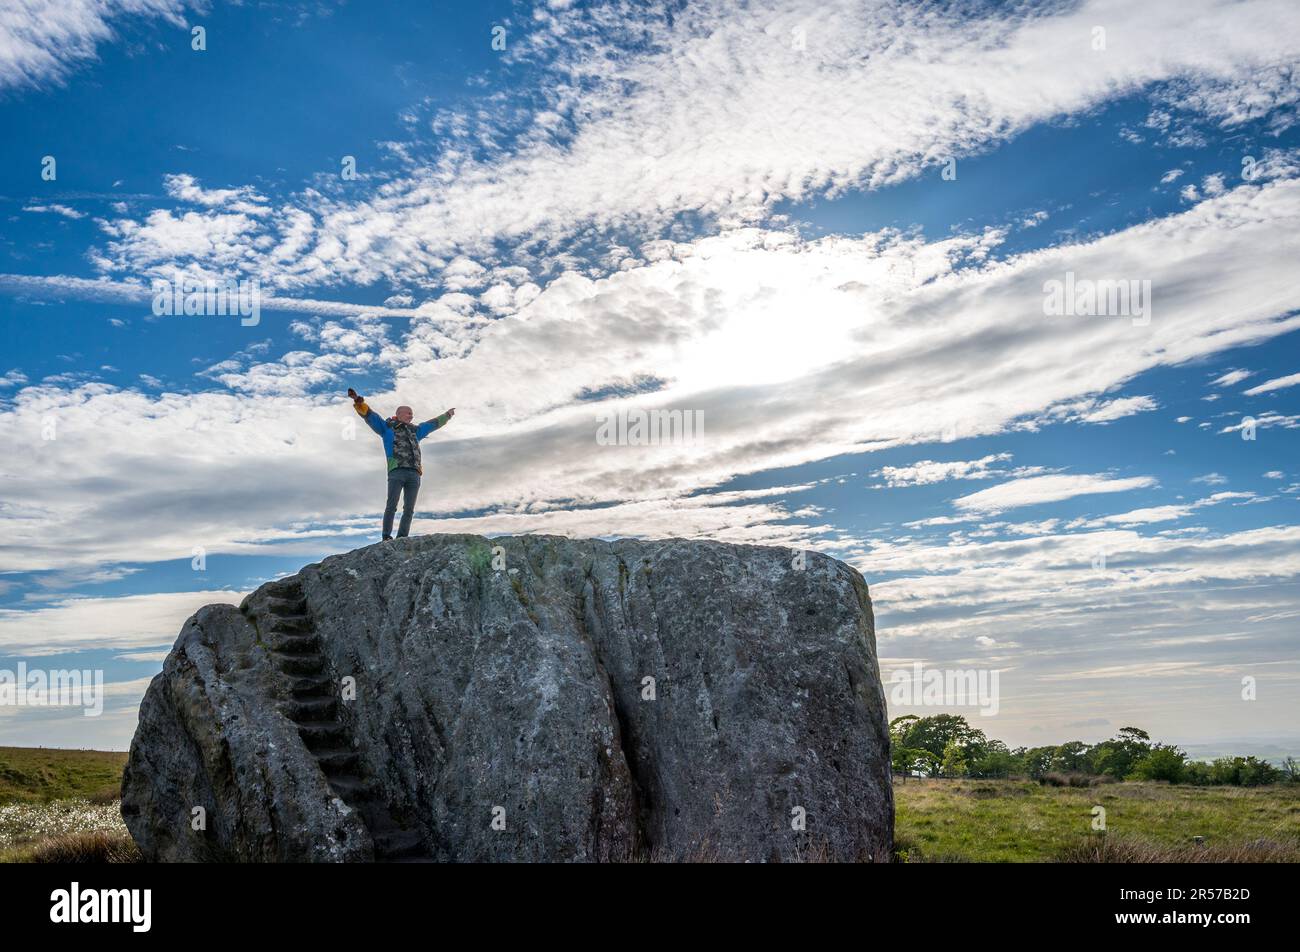 Homme debout au-dessus de la Grande Pierre de Fourstones, ou la Grande Pierre qui est un dépôt glaciaire sur les landes de Tatham Fells, Angleterre. Banque D'Images